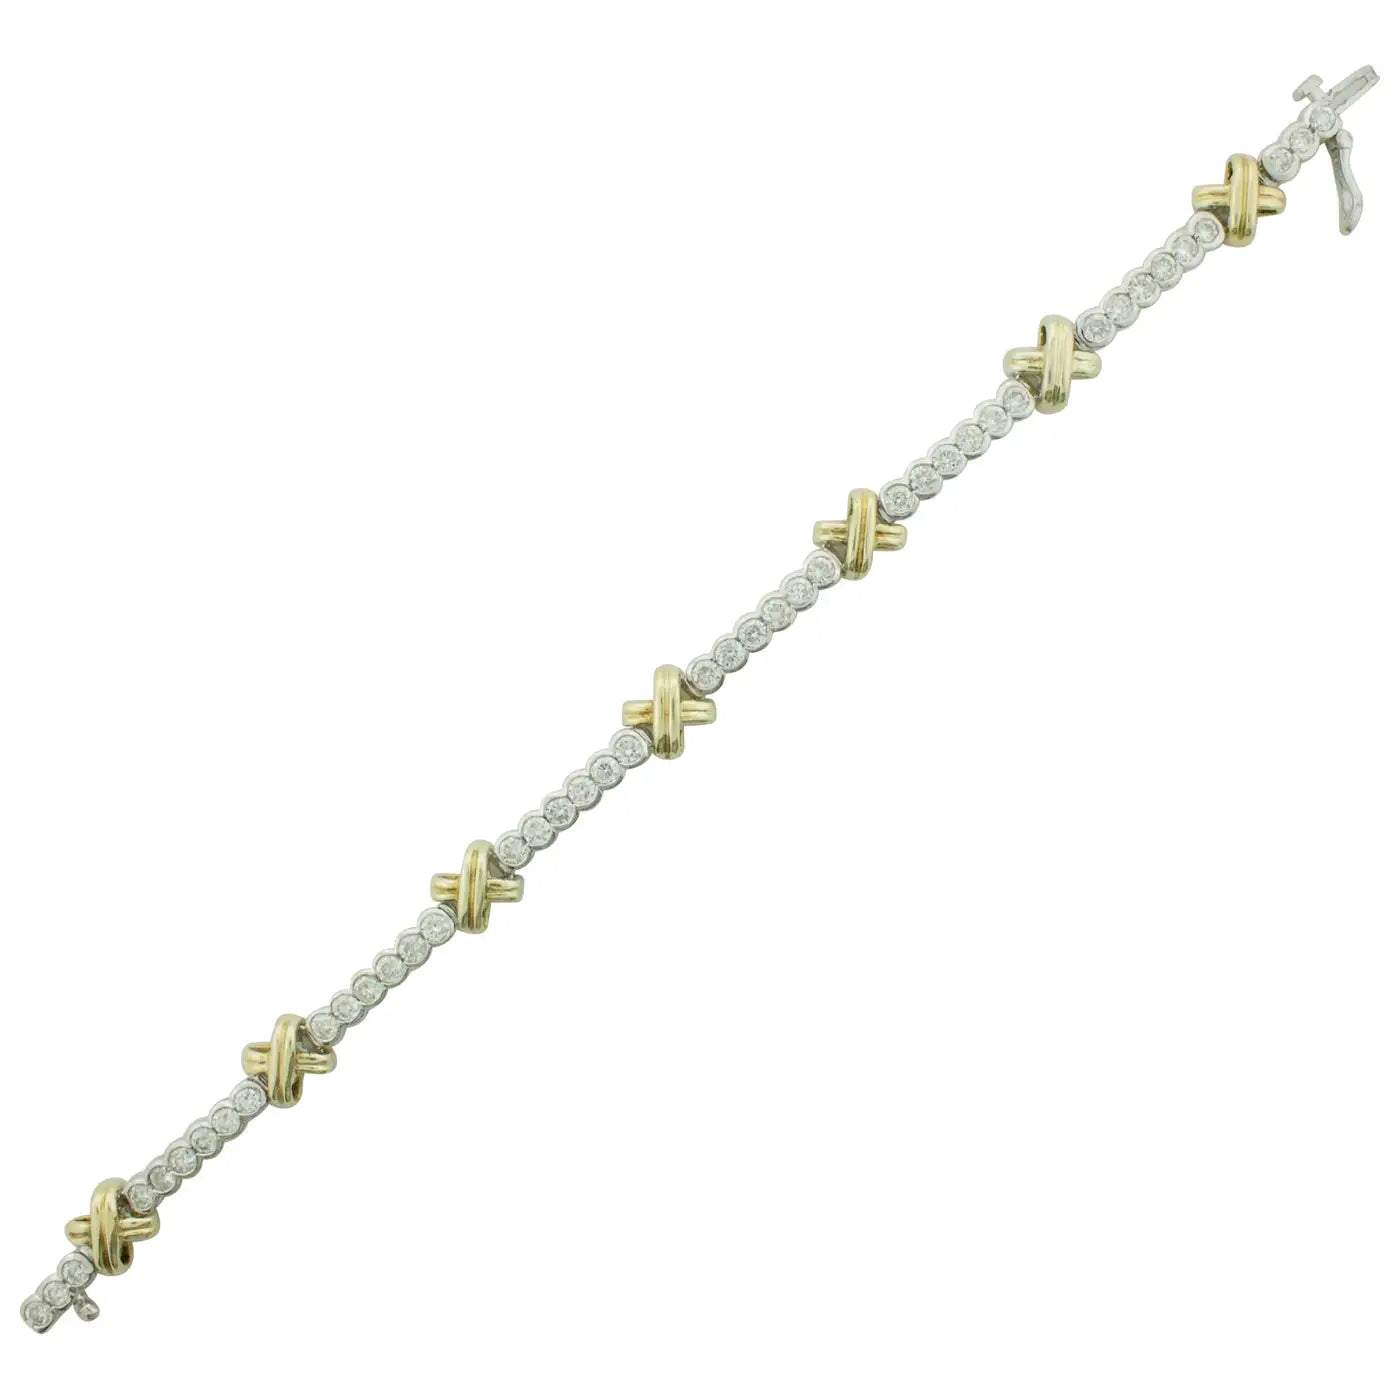 Yellow and White Gold Diamond "X" Tennis Bracelet